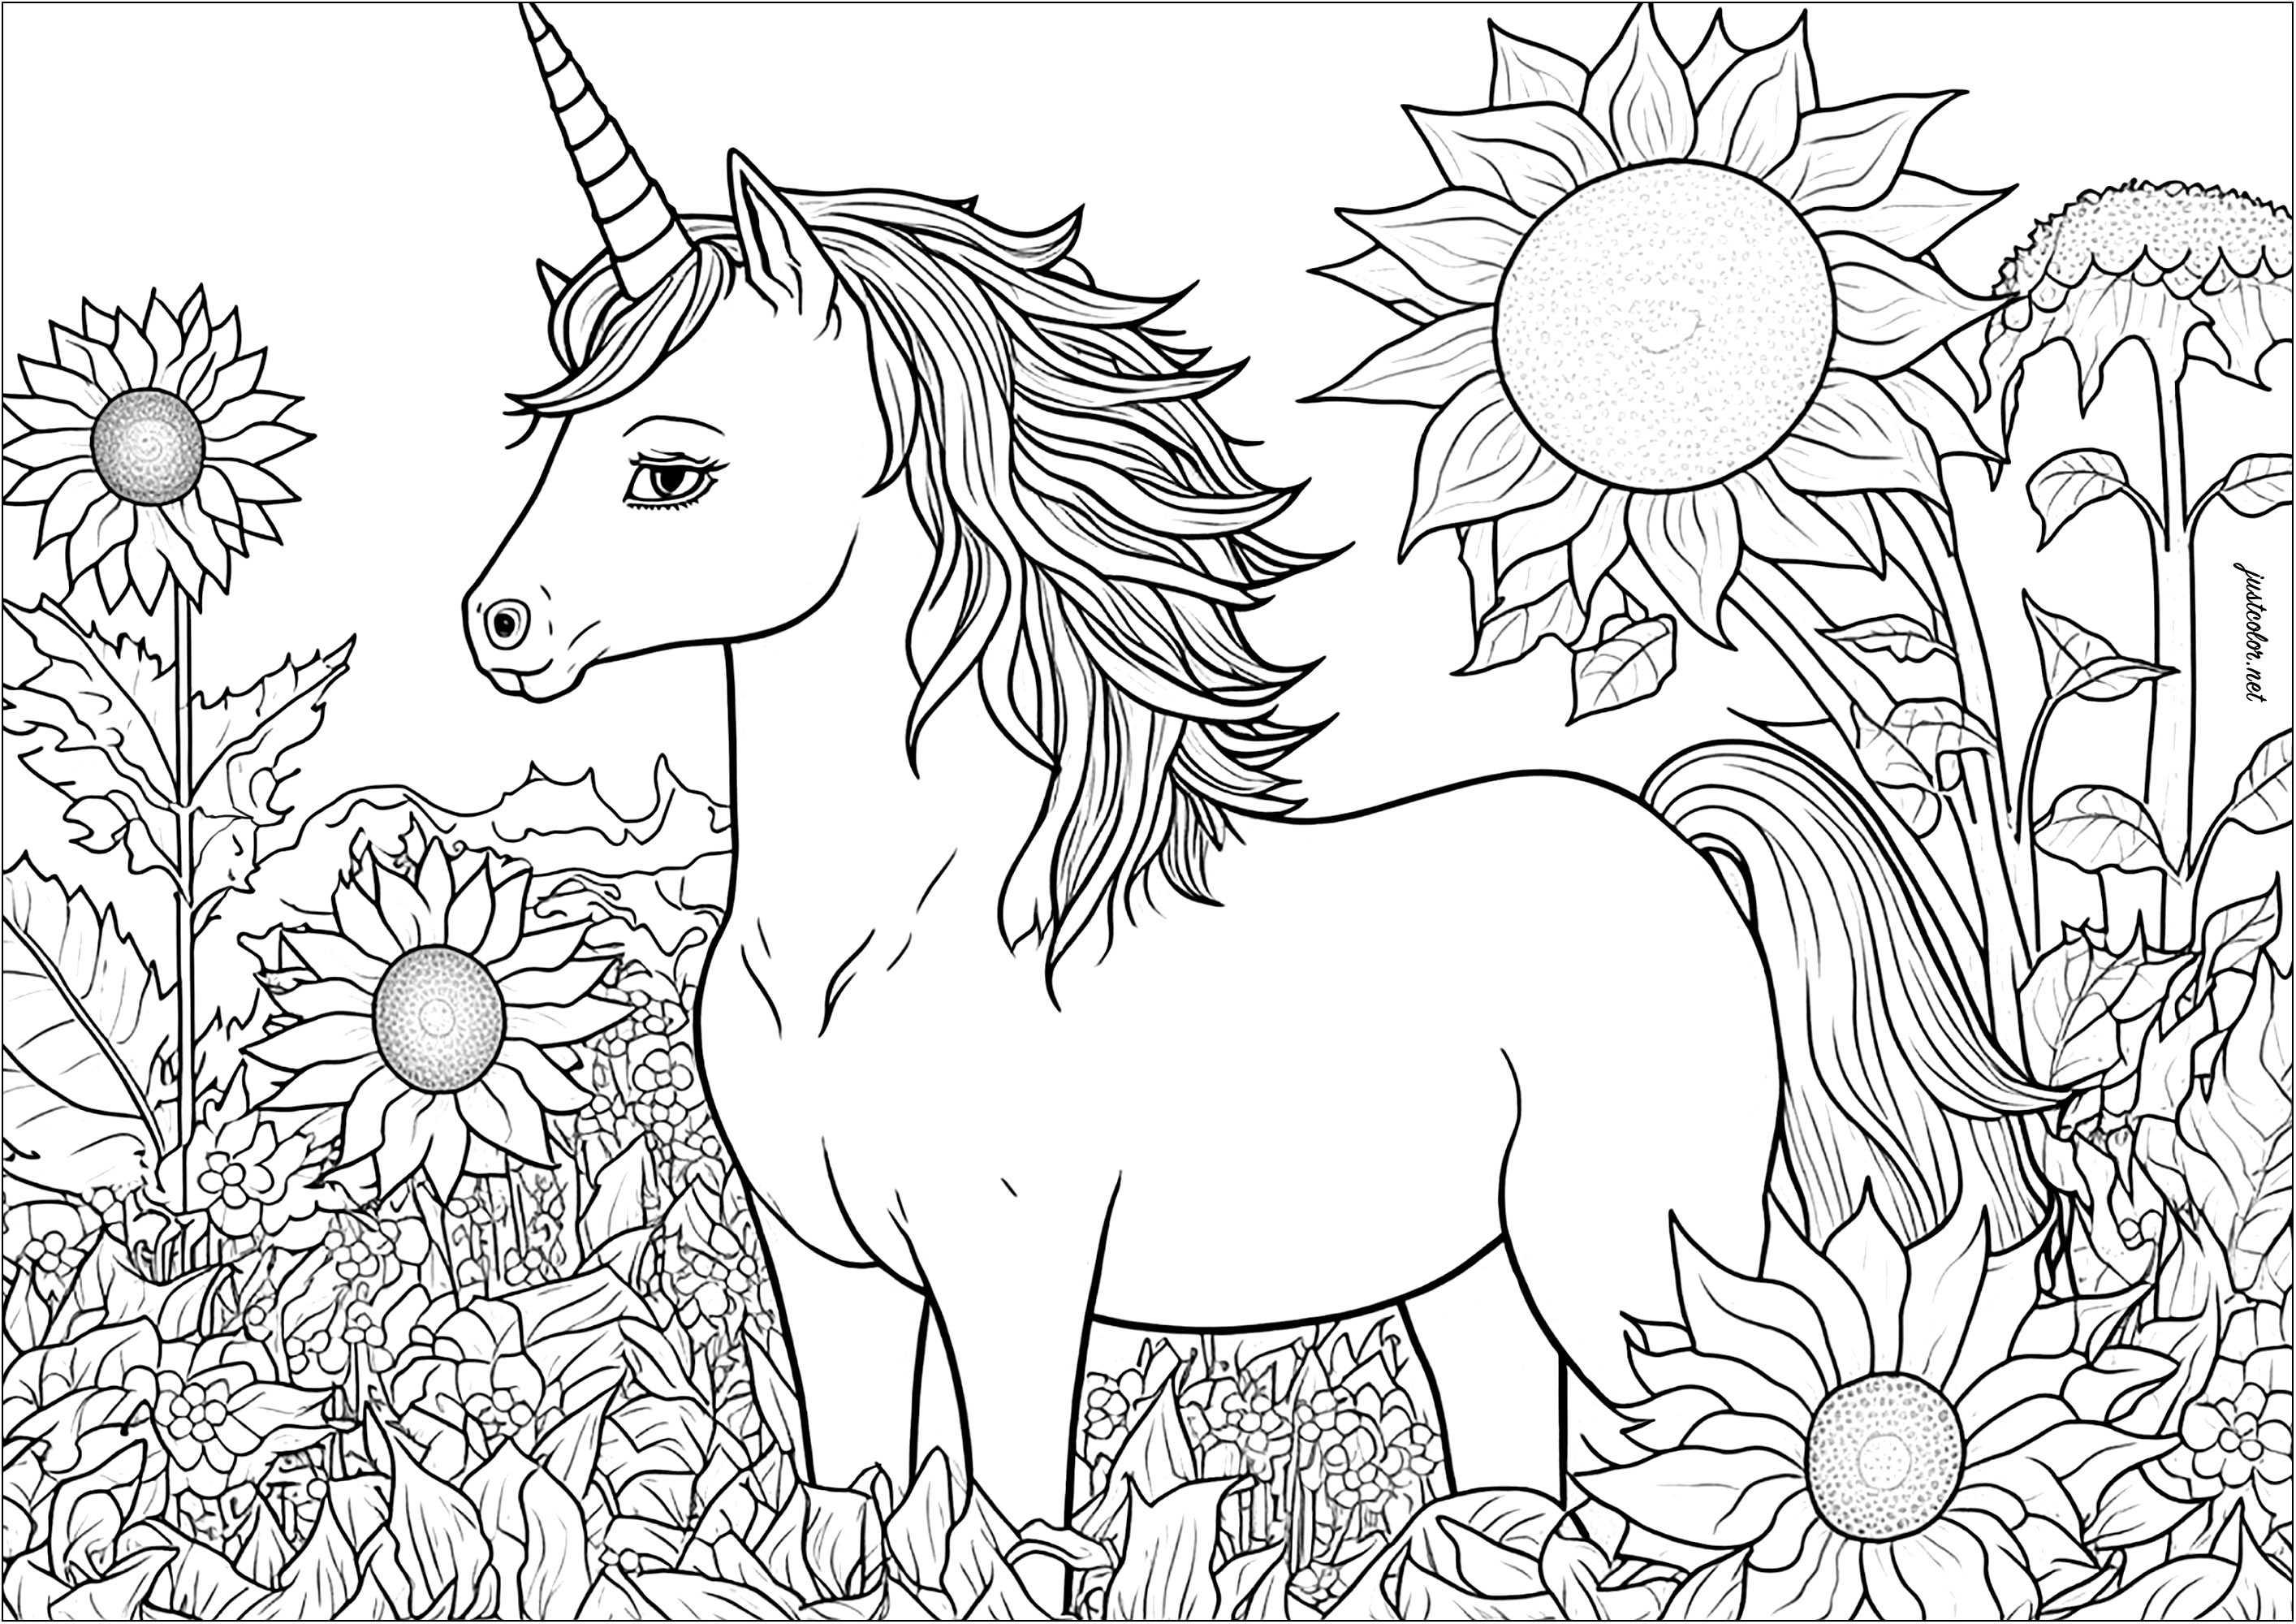 Unicornio y girasoles para colorear. Muchos detalles para colorear, ya sea en las flores, la vegetación o la melena de este hermoso unicornio.
